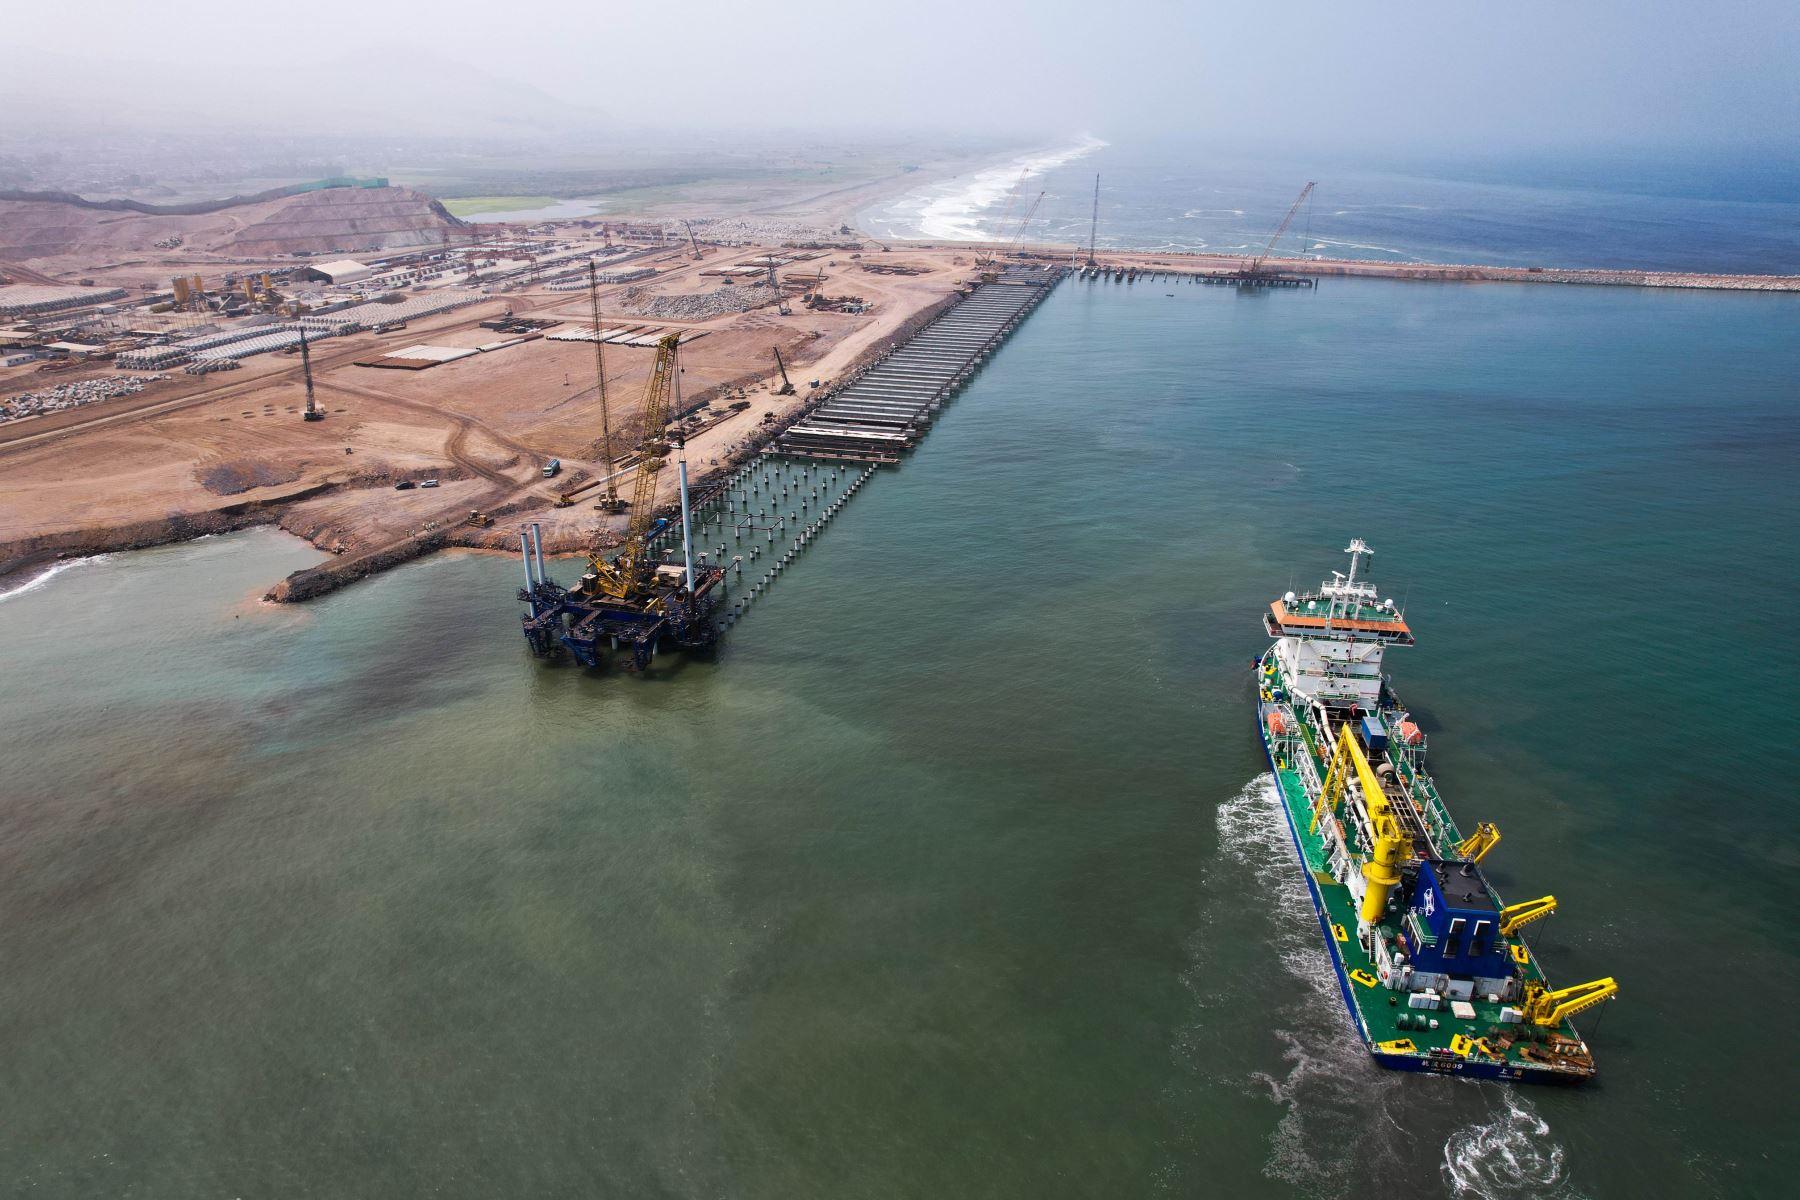 Este es el nuevo Puerto de Chancay, ubicado a 75 kilómetros al norte de Lima. Una gran obra de infraestructura portuaria con capacidad de albergar hasta 15 muelles. Foto: ANDINA/Daniel Bracamonte